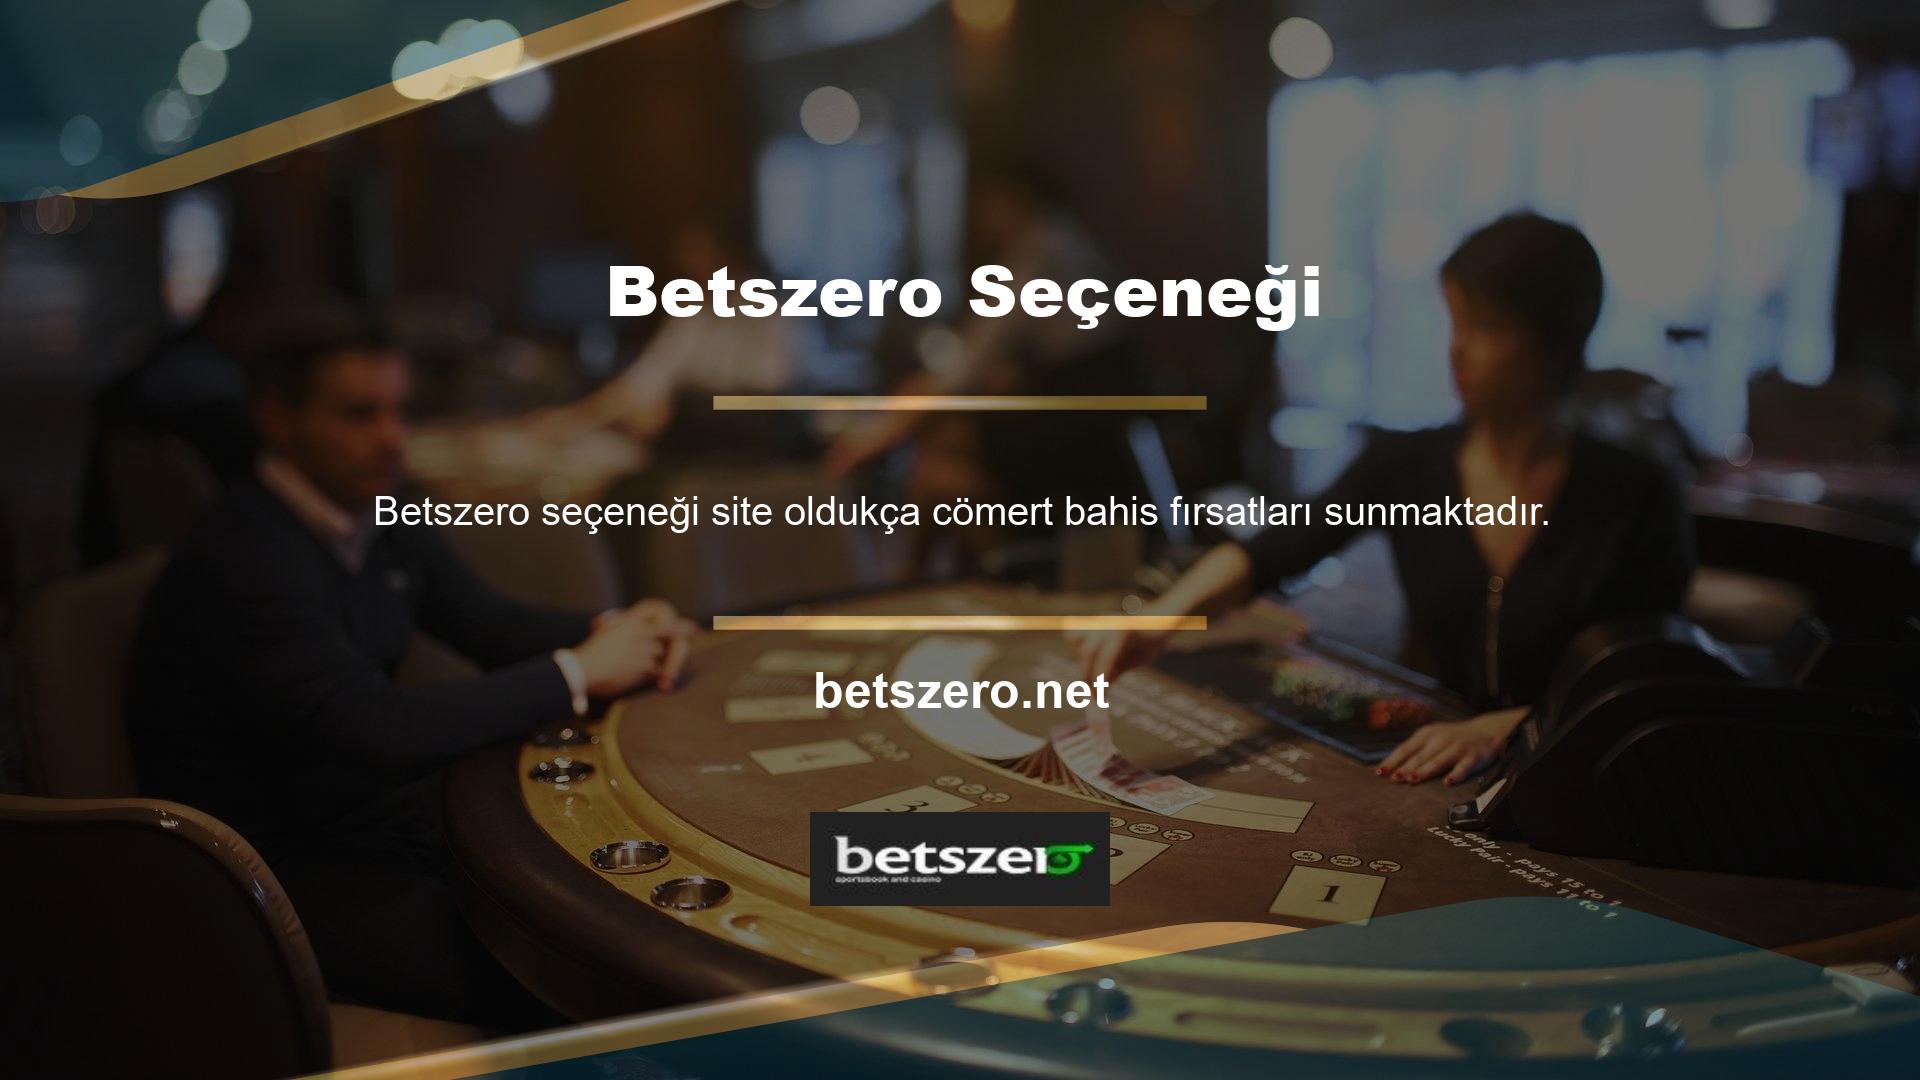 Betszero geniş iletişim ağı sayesinde her zaman yanınızda olacağını ve sorularınızı yanıtlamaya hazır olacağını biliyor muydunuz? Bu sitelerin ülkemizde şubesi olmadığı için oyuncular ve casino oyuncuları bu hizmetleri profesyonelce yerine getirmek için bu sitelere güvenmektedir